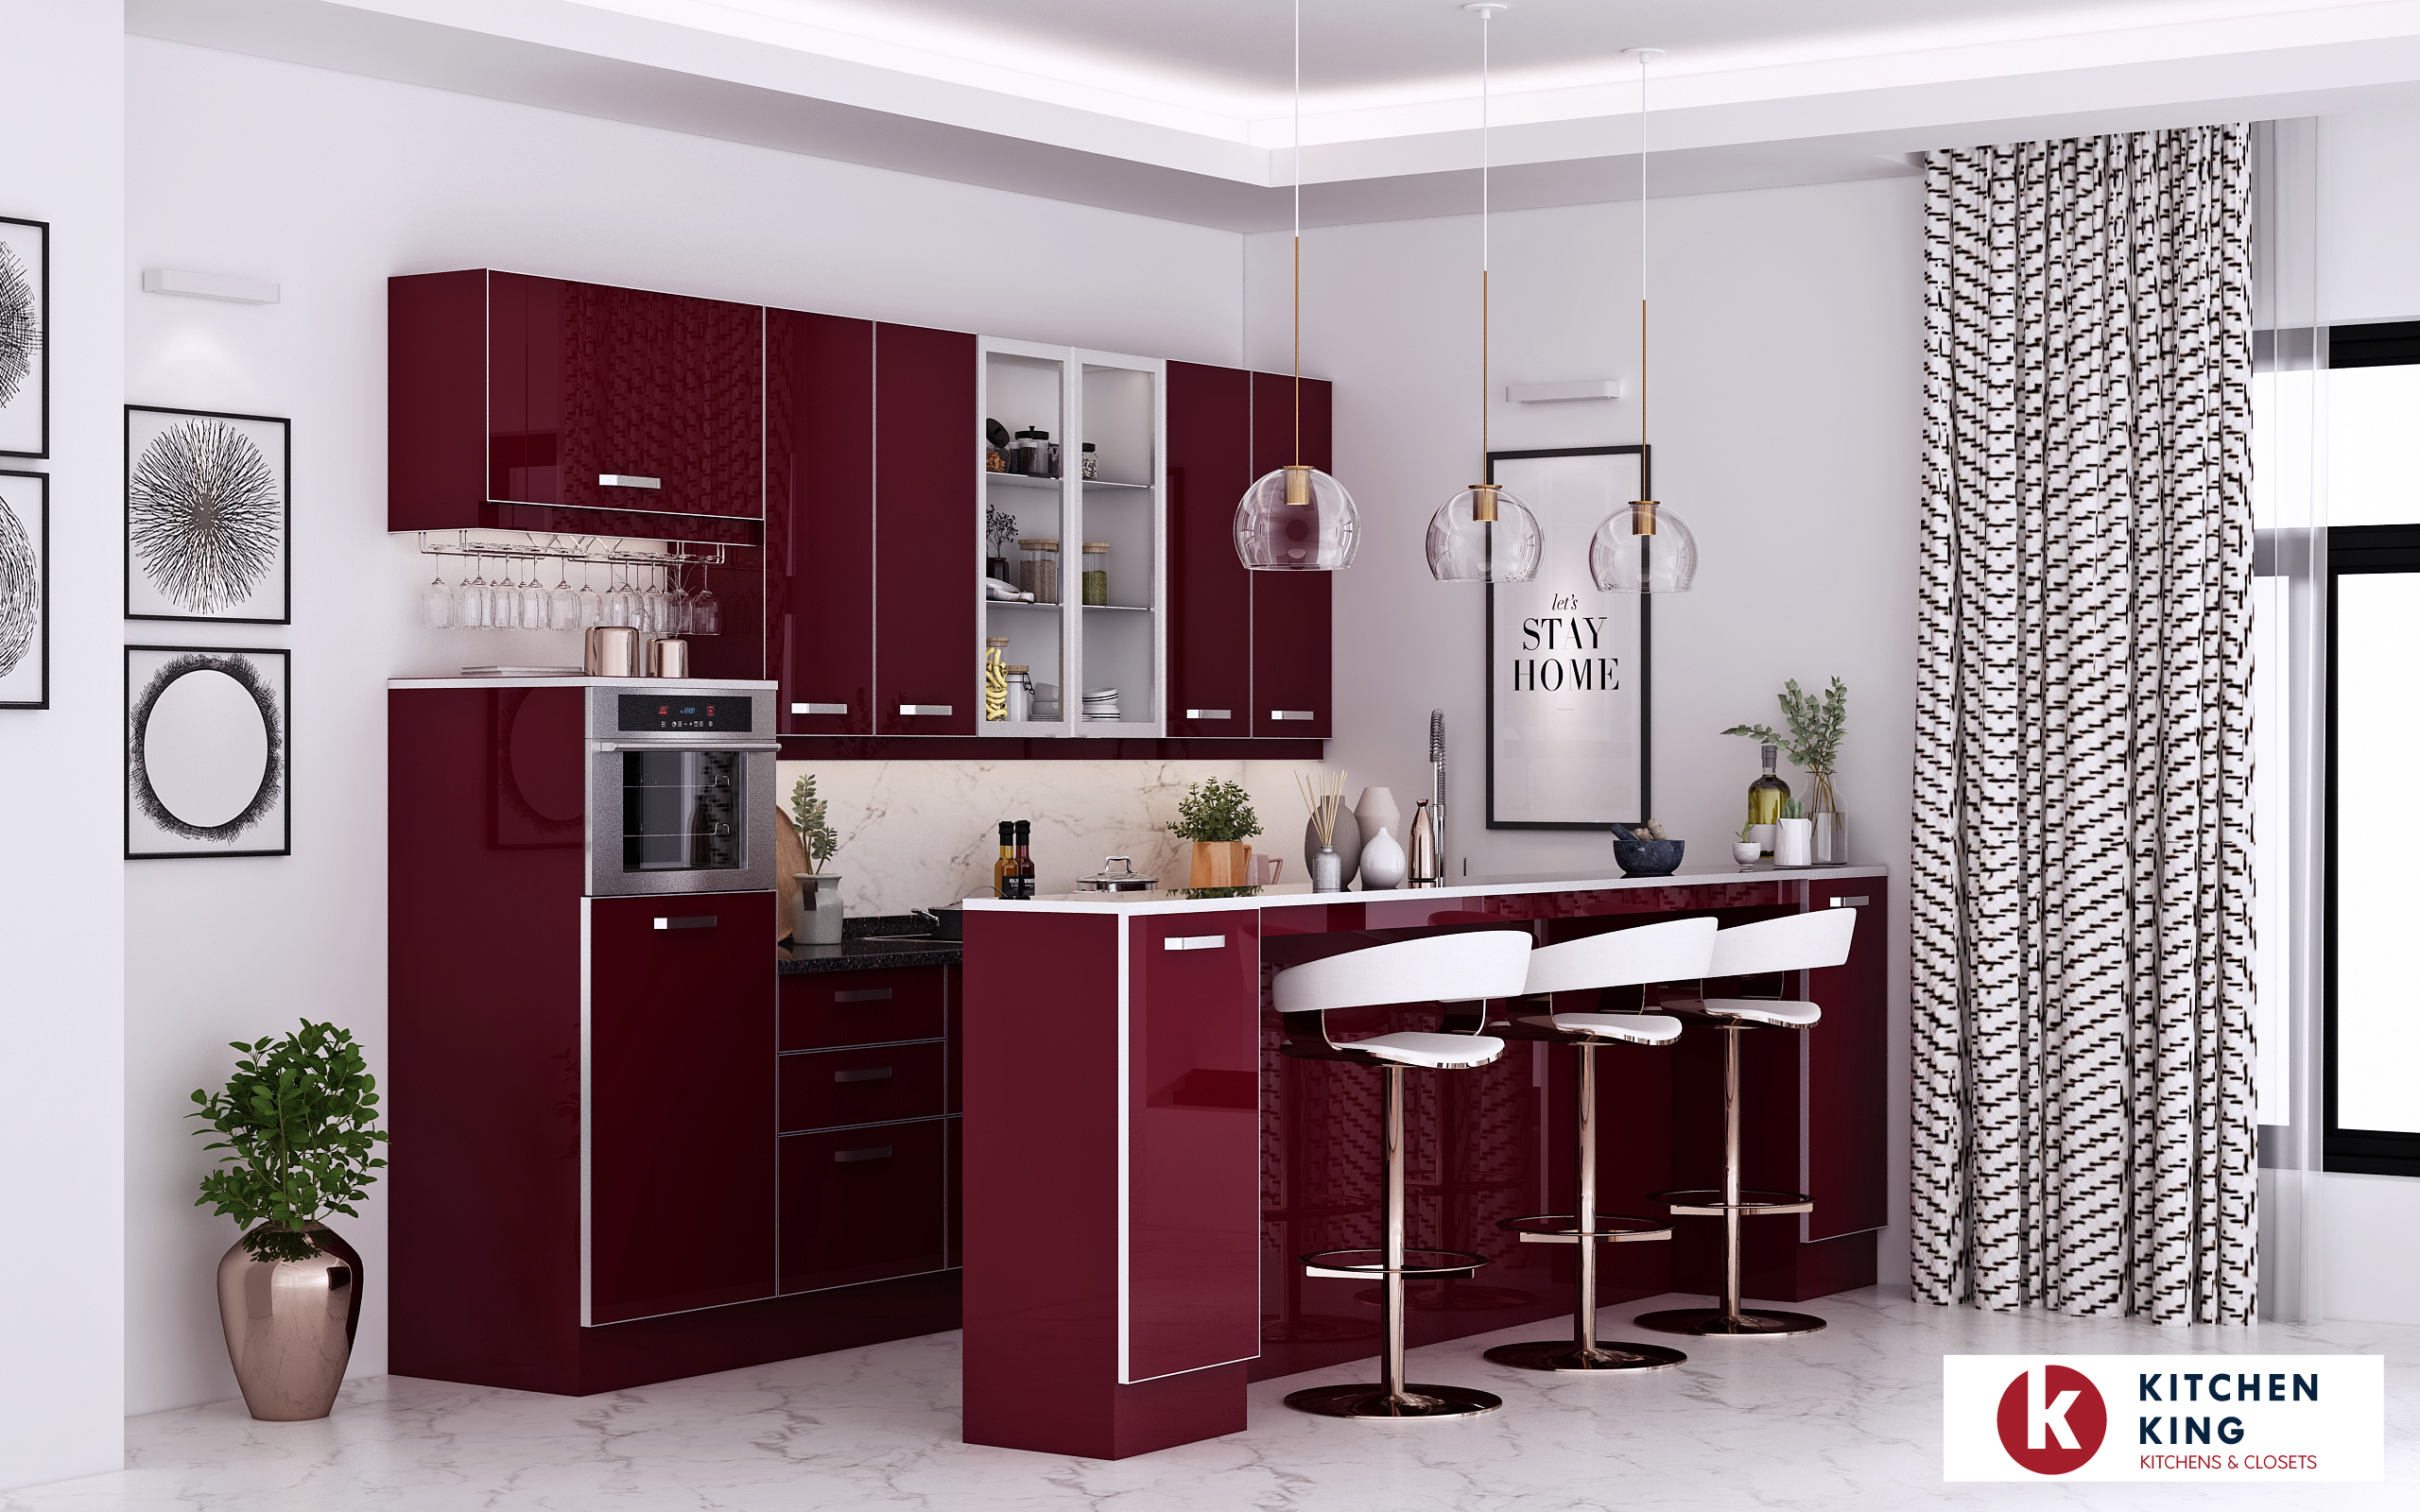 Kitchen designs and Kitchen cabinet in Dubai, UAE | KITCHEN KING